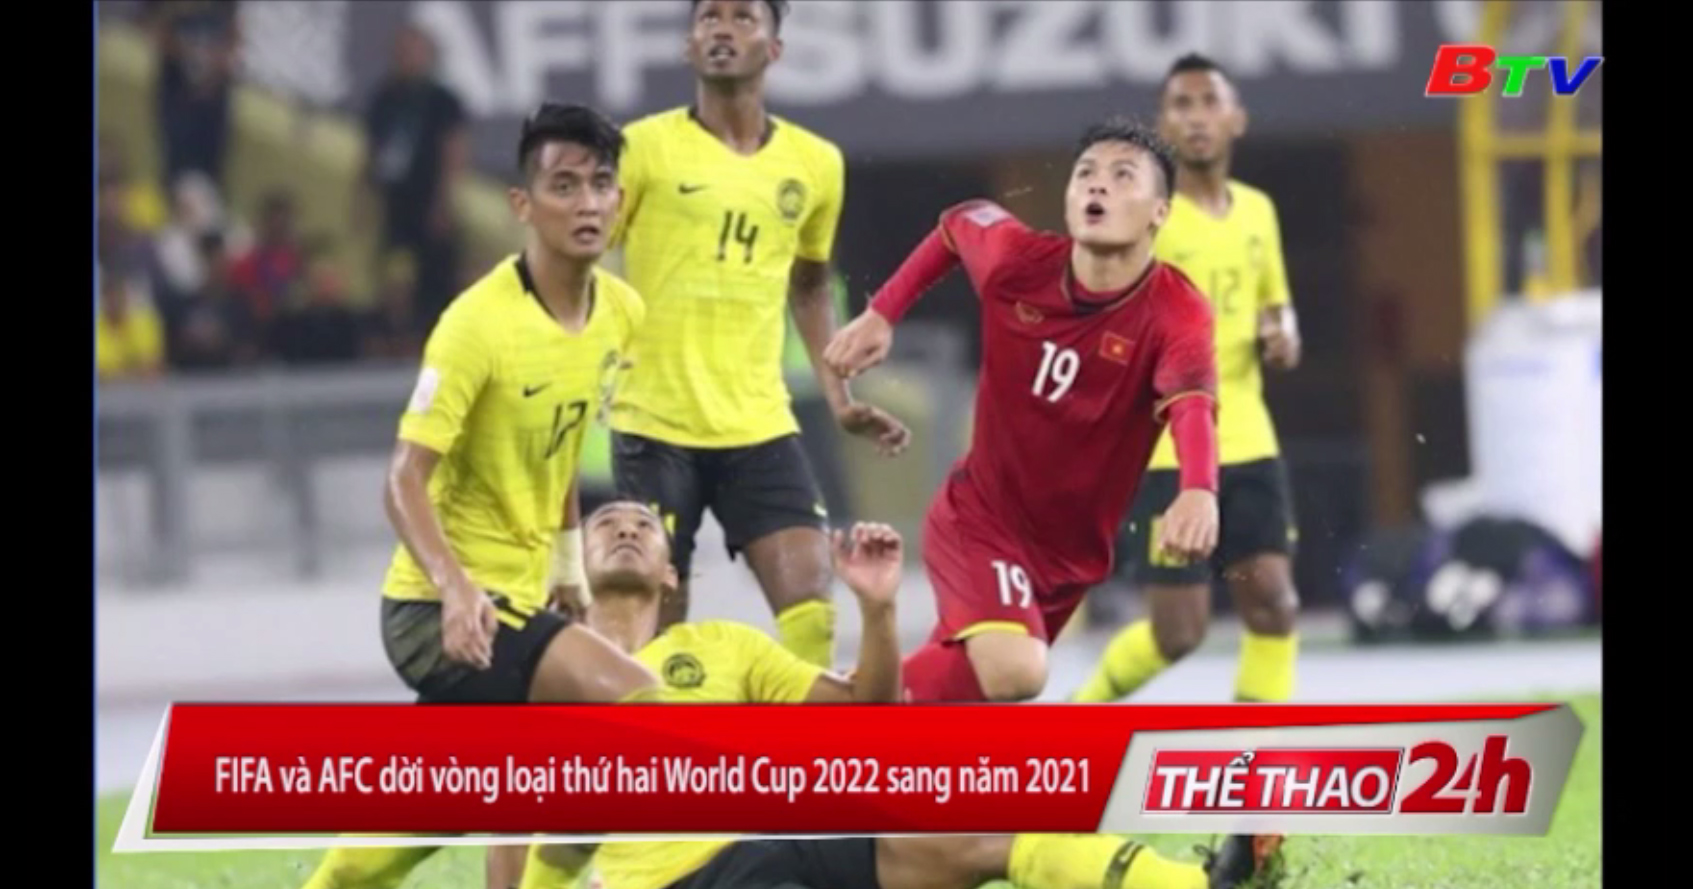 FIFA và AFC dời vòng loại thứ 2 World Cup 2022 sang năm 2021